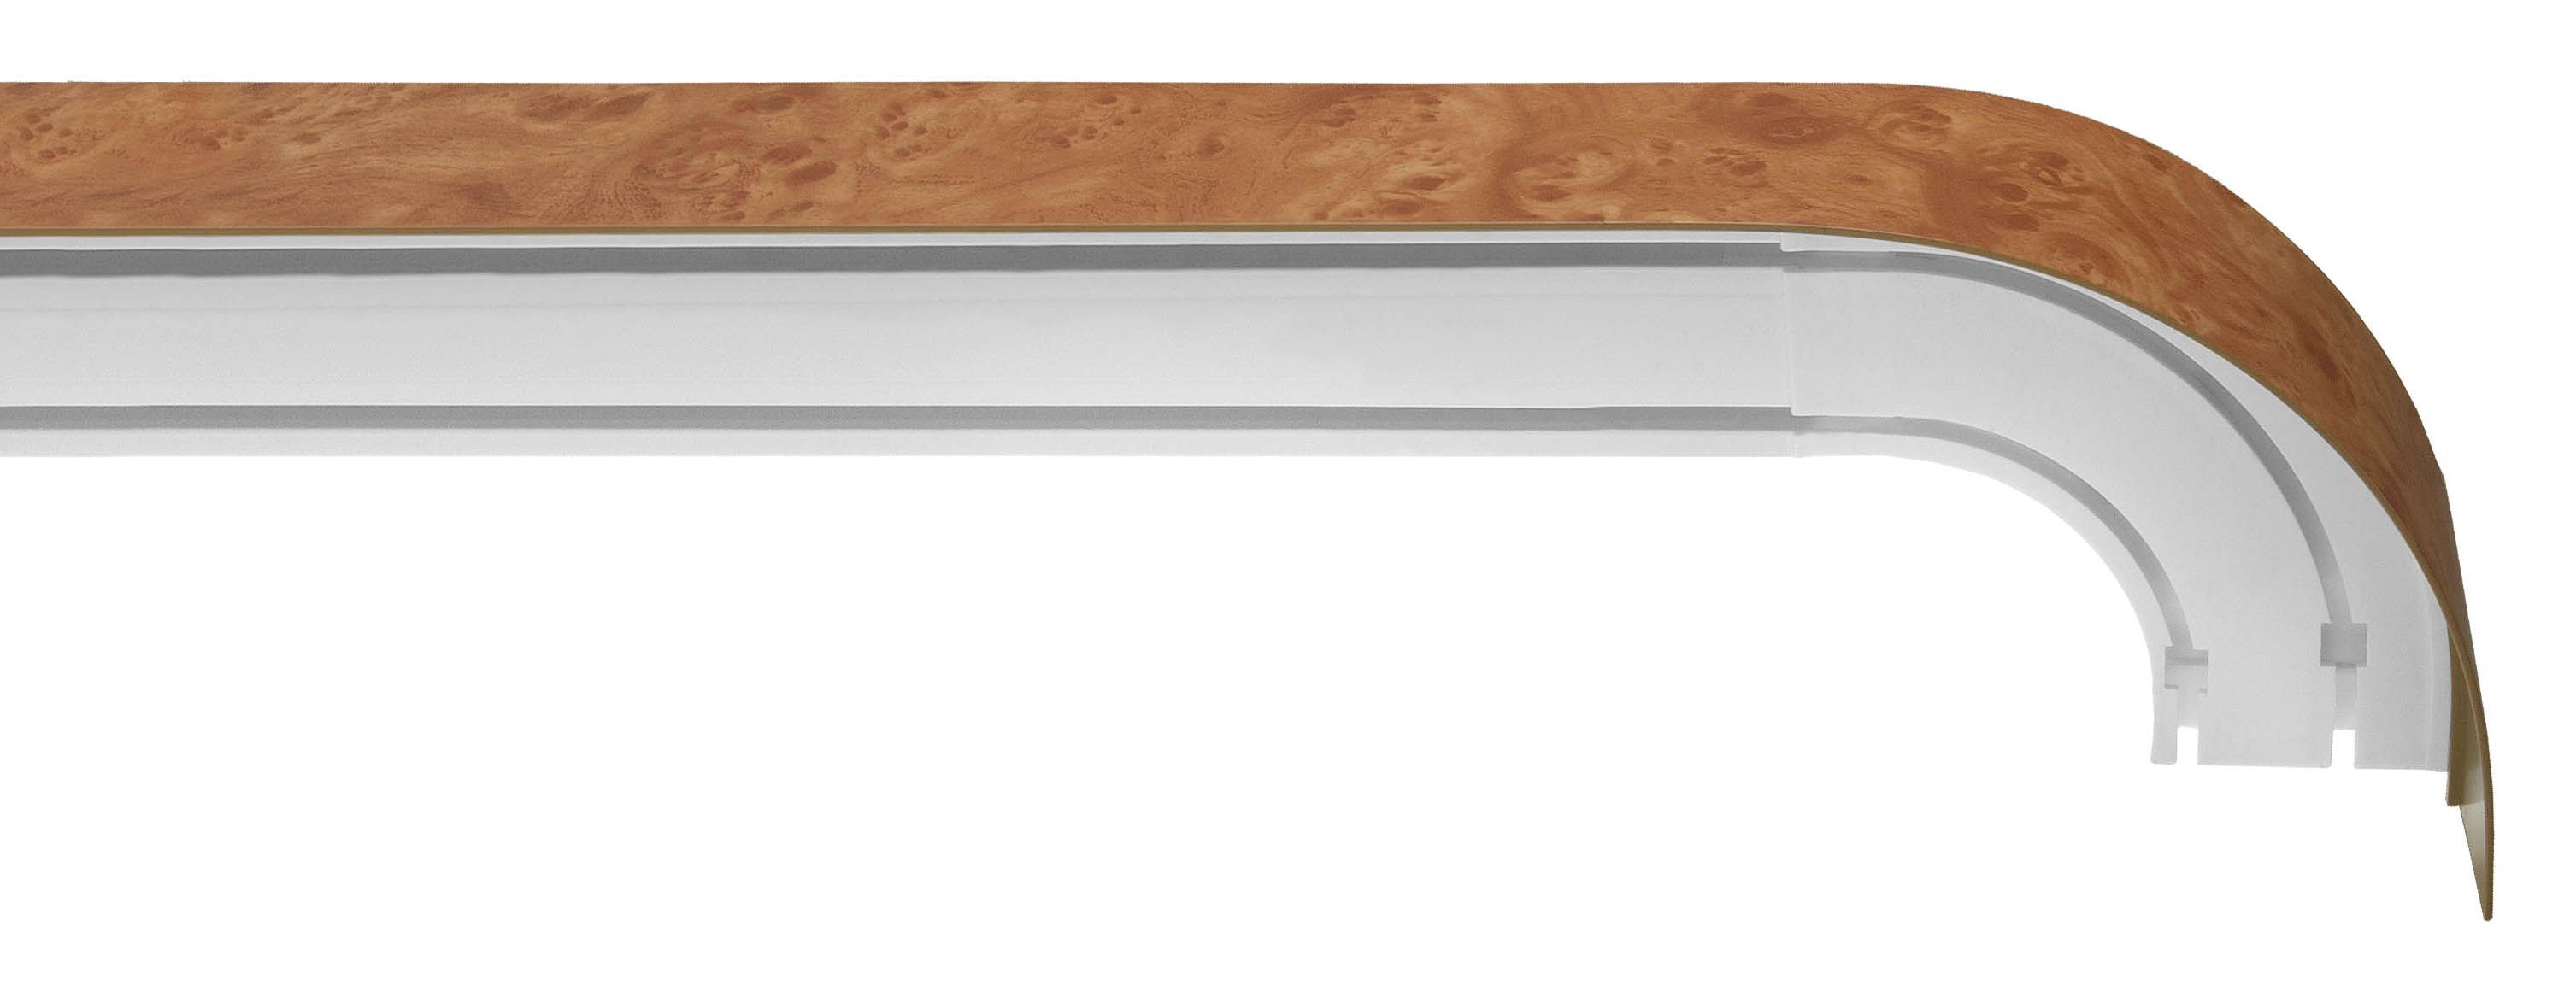 Бленда карниза потолочная для штор 50мм (рулон 20м) идеал белая/001